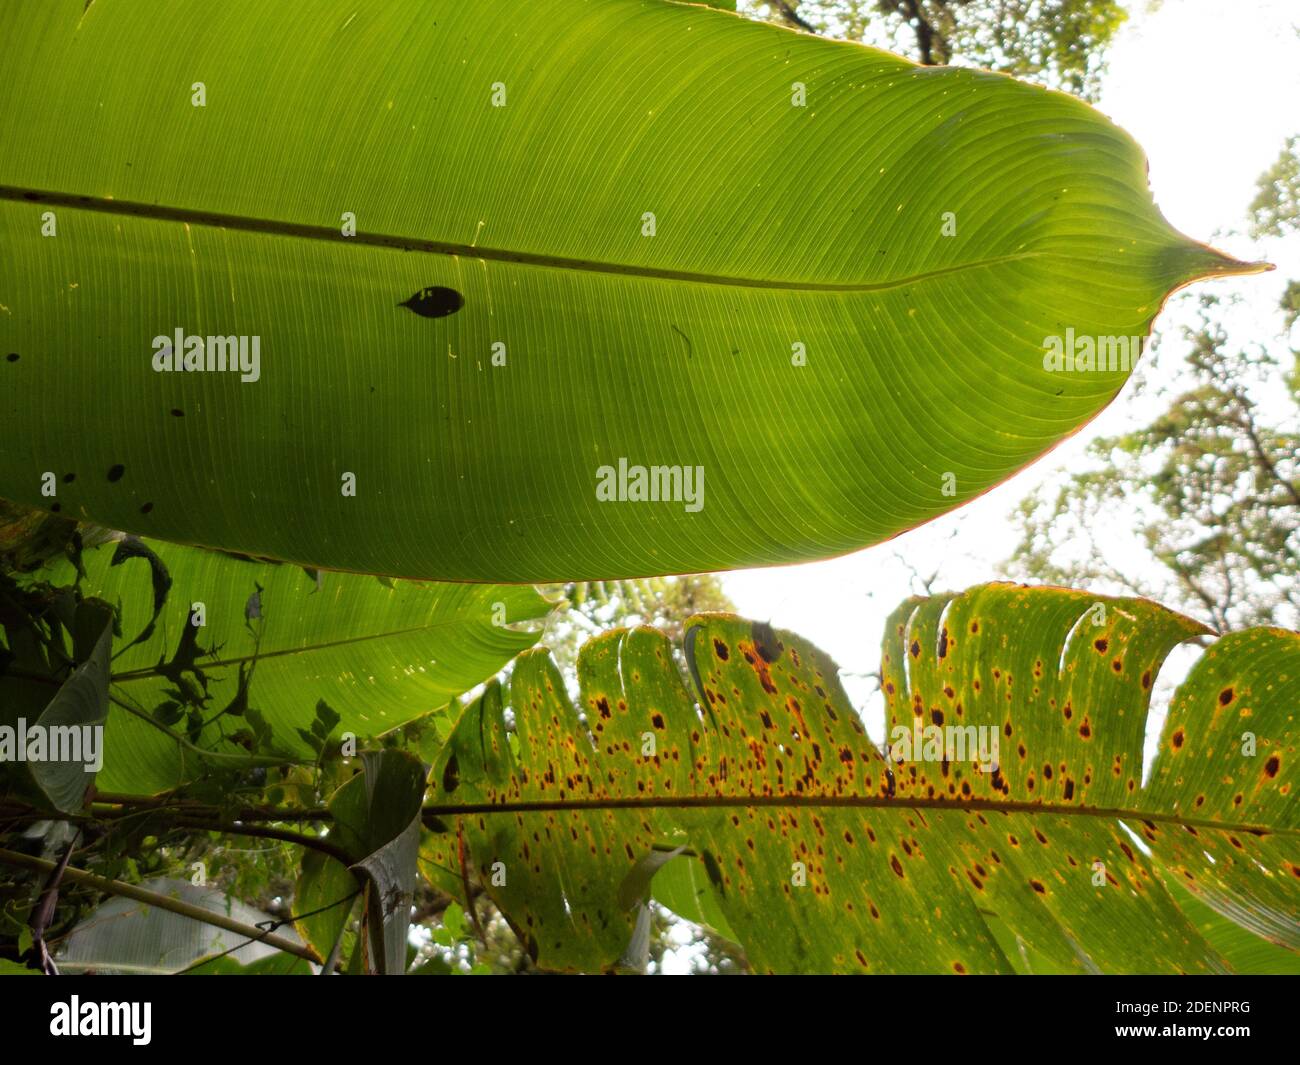 Randonnée dans la forêt tropicale du Costa Rica. Tout est vert. Les feuilles et fougères de différentes plantes peuvent être vues sur le sol. Banque D'Images